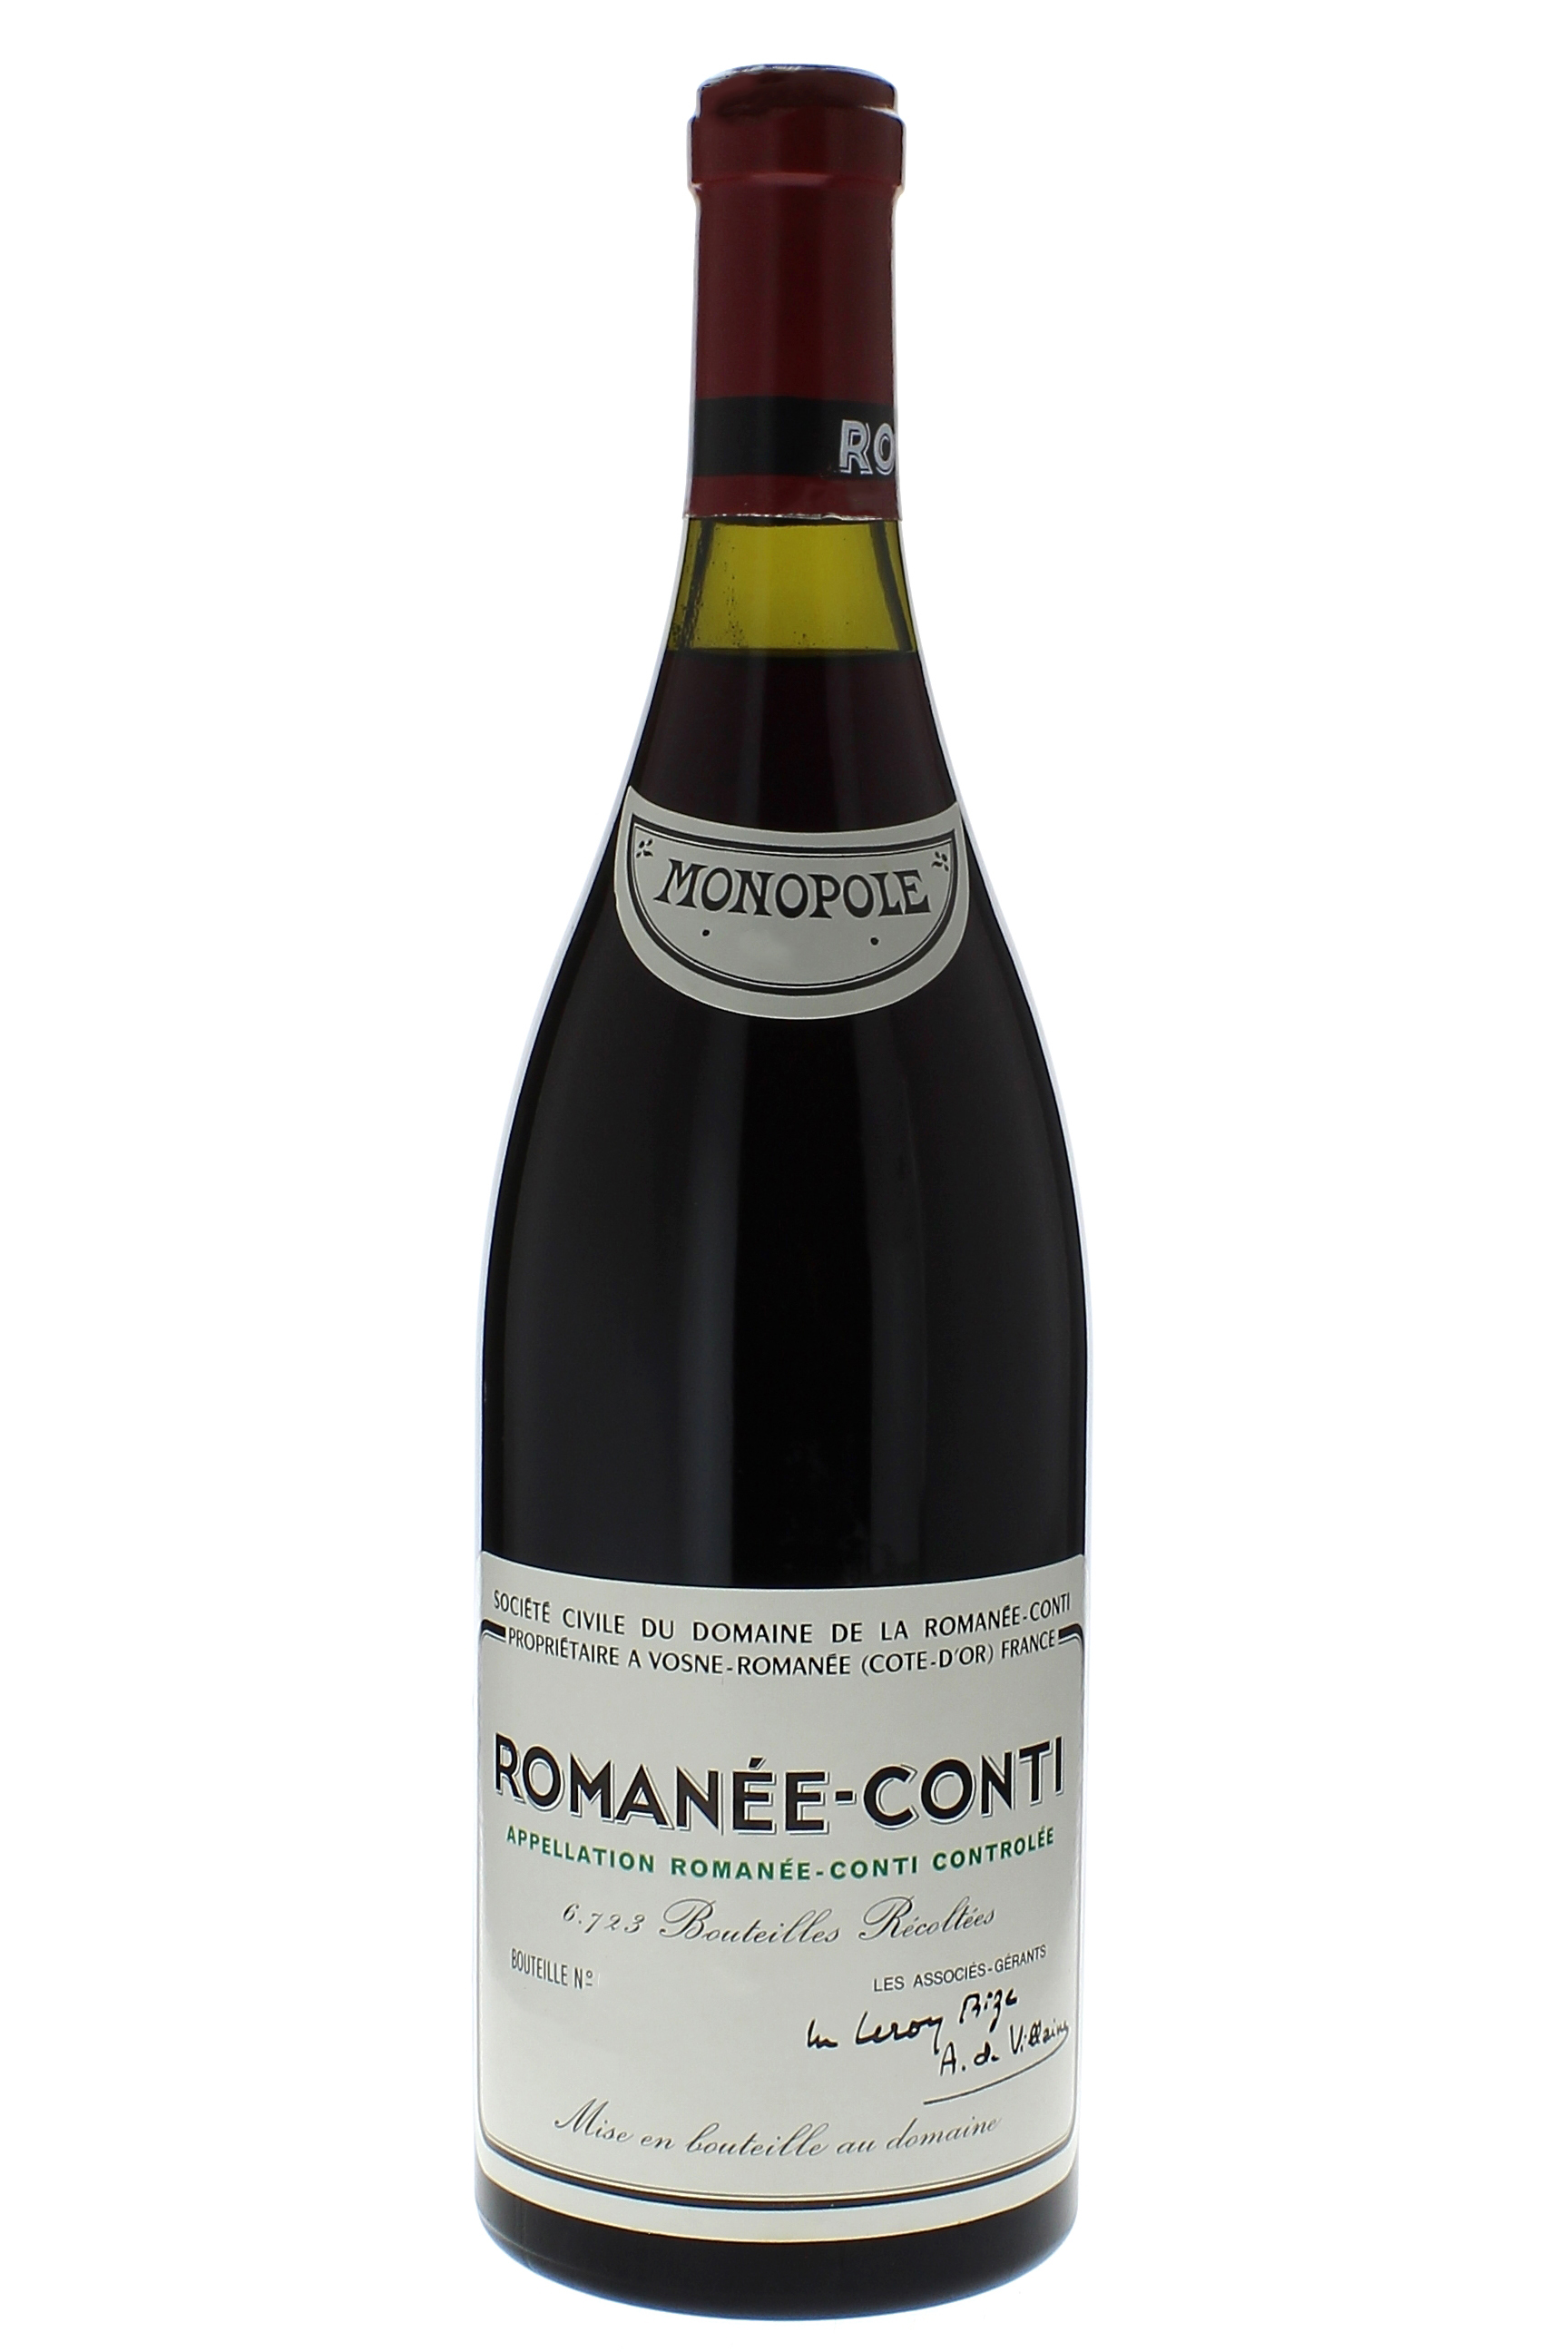 Romane conti grand cru 1982 Domaine ROMANEE CONTI, Bourgogne rouge